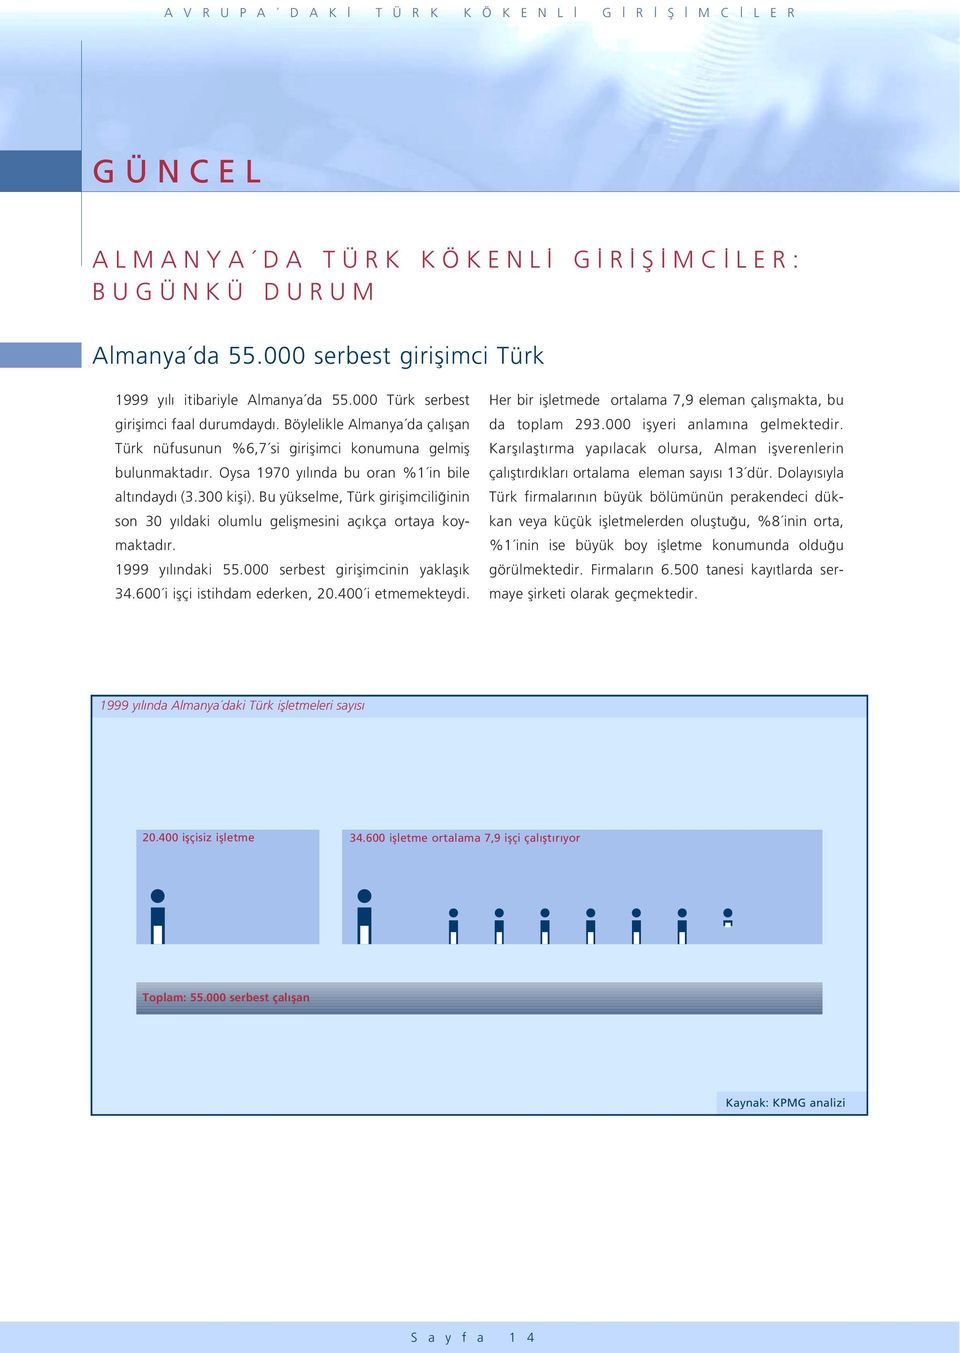 Bu yükselme, Türk giriflimcili inin son 30 y ldaki olumlu geliflmesini aç kça ortaya koymaktad r. 1999 y l ndaki 55.000 serbest giriflimcinin yaklafl k 34.600 i iflçi istihdam ederken, 20.